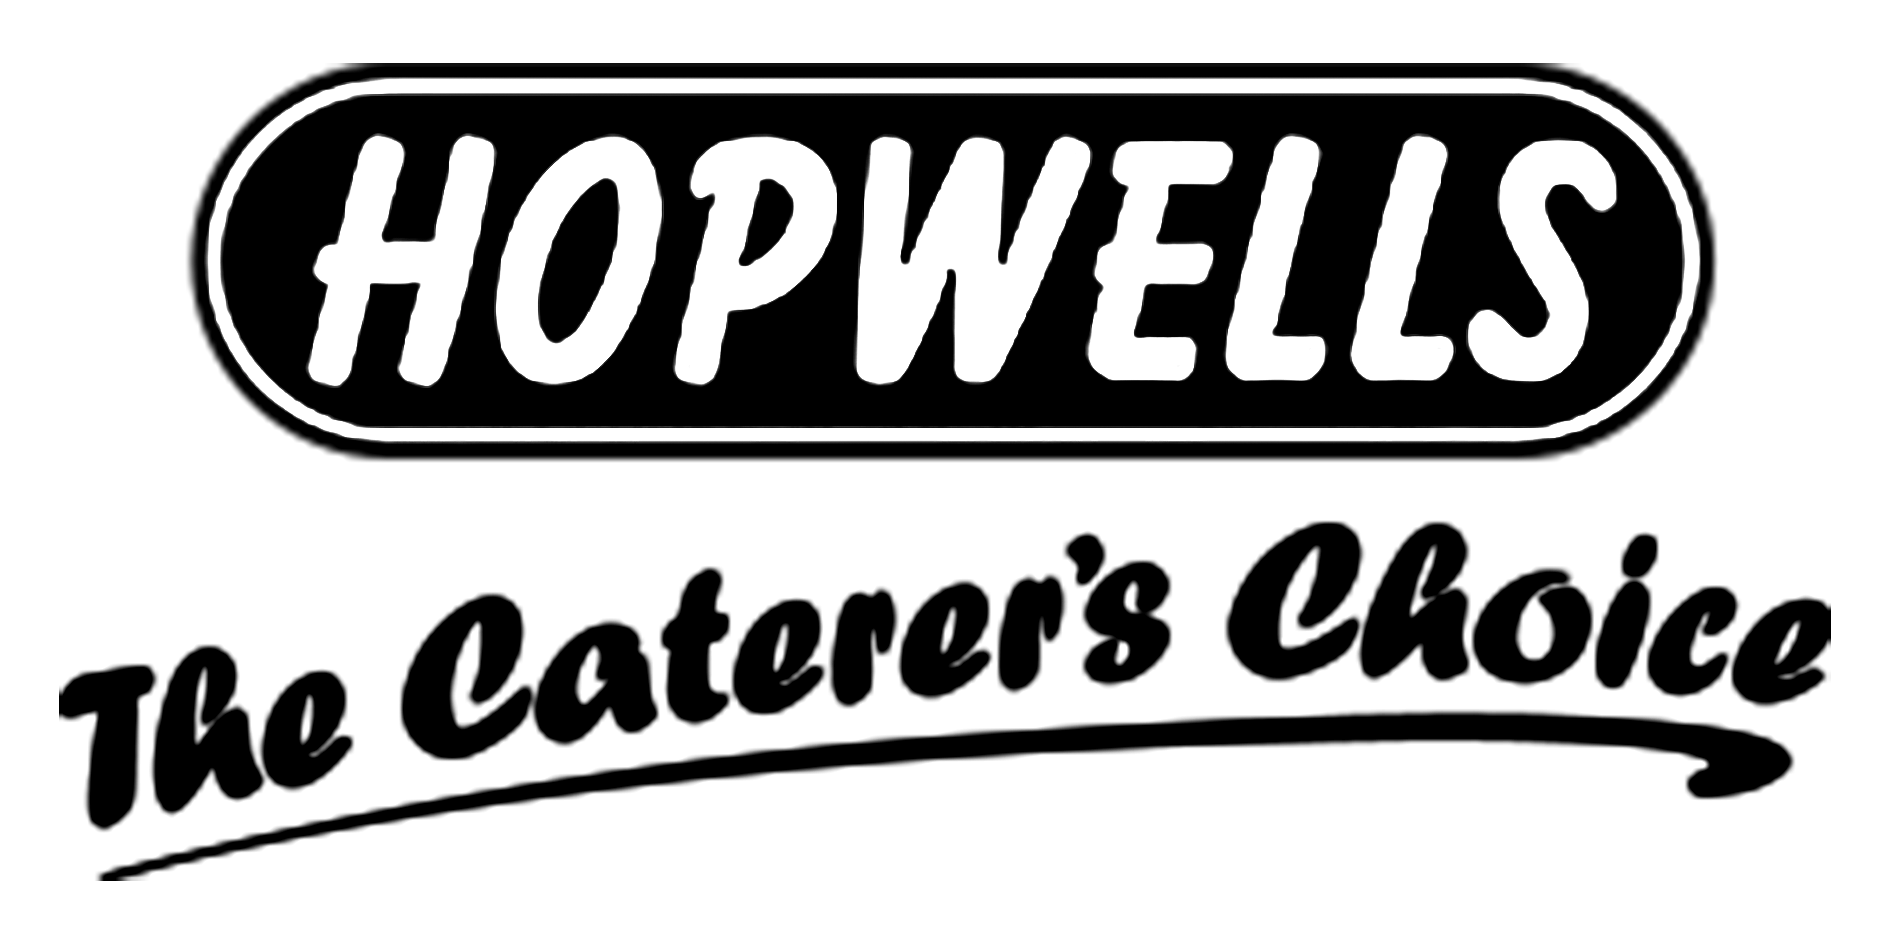 Hopwells-logo-blk-text